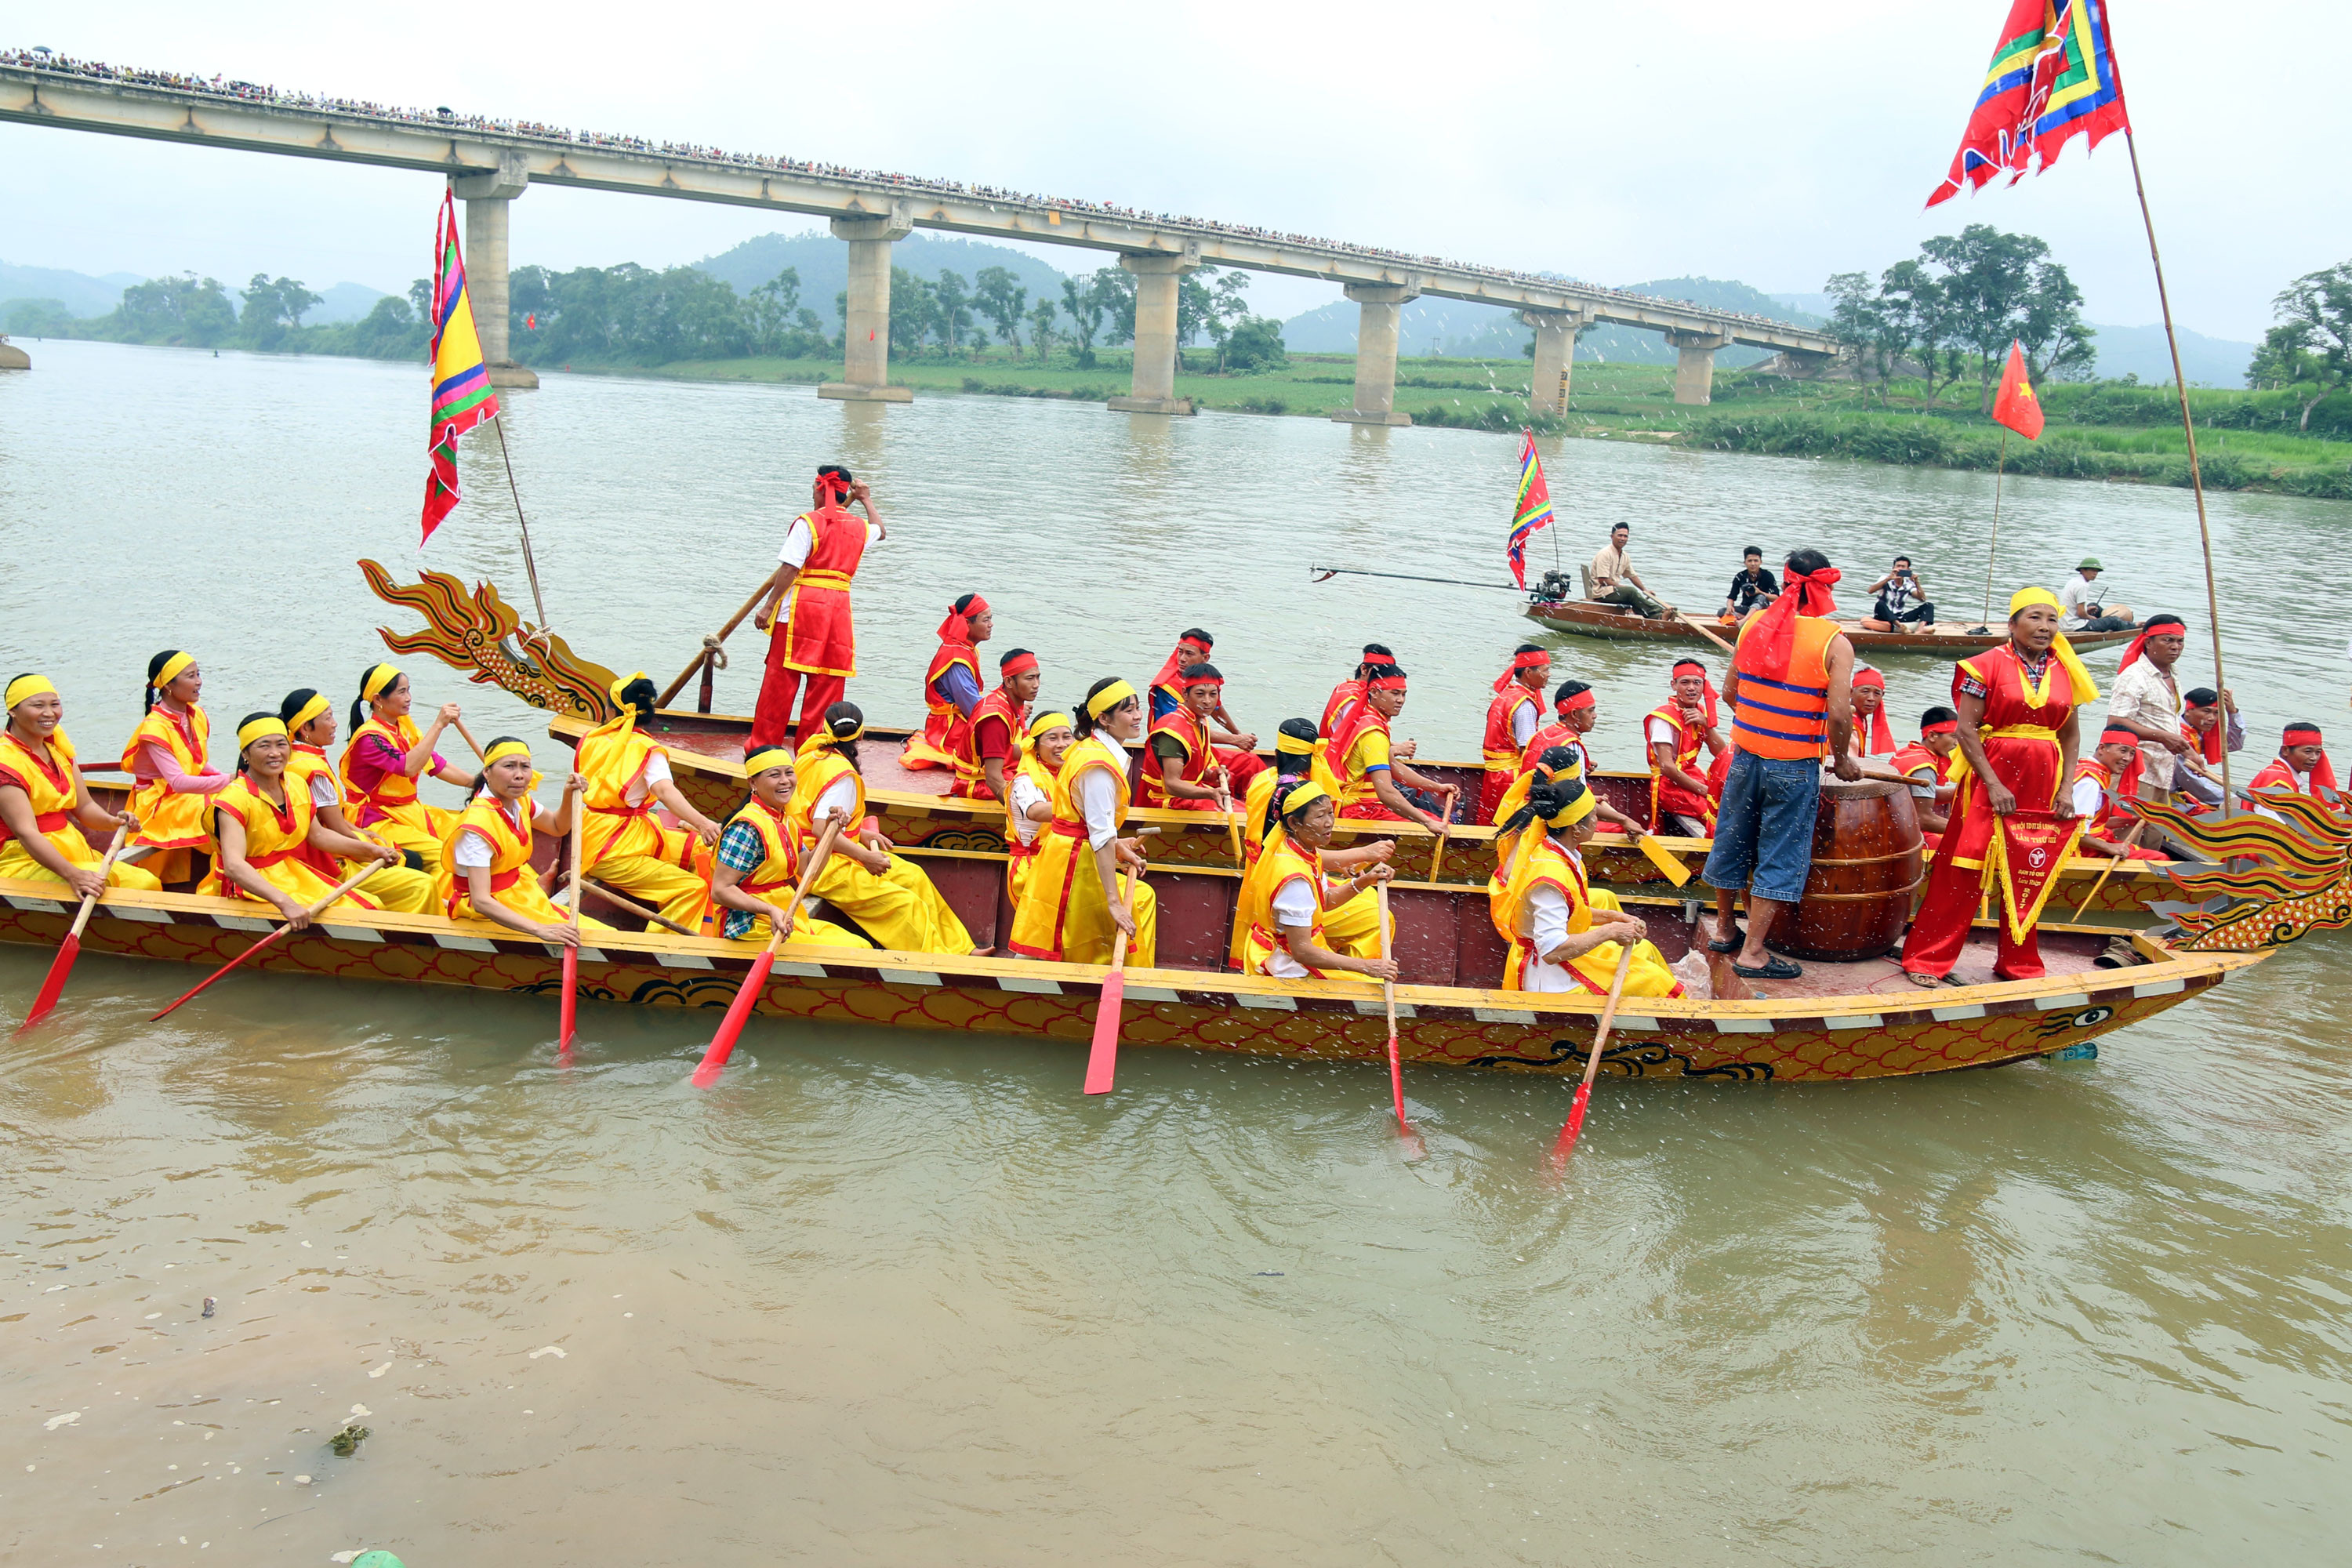 Giải đua thuyền năm nay có 4 đội với hơn 70 vận động viên đến từ các huyện Anh Sơn, Tân Kỳ, Con Cuông tham dự. Mục đích chính của cuộc đua lần này là khôi phục lại lễ hội truyền thống của cha ông đồng thời tạo không khí vui vẻ, sôi nổi cho ngày nghỉ lễ. Ảnh: Đào Thọ 